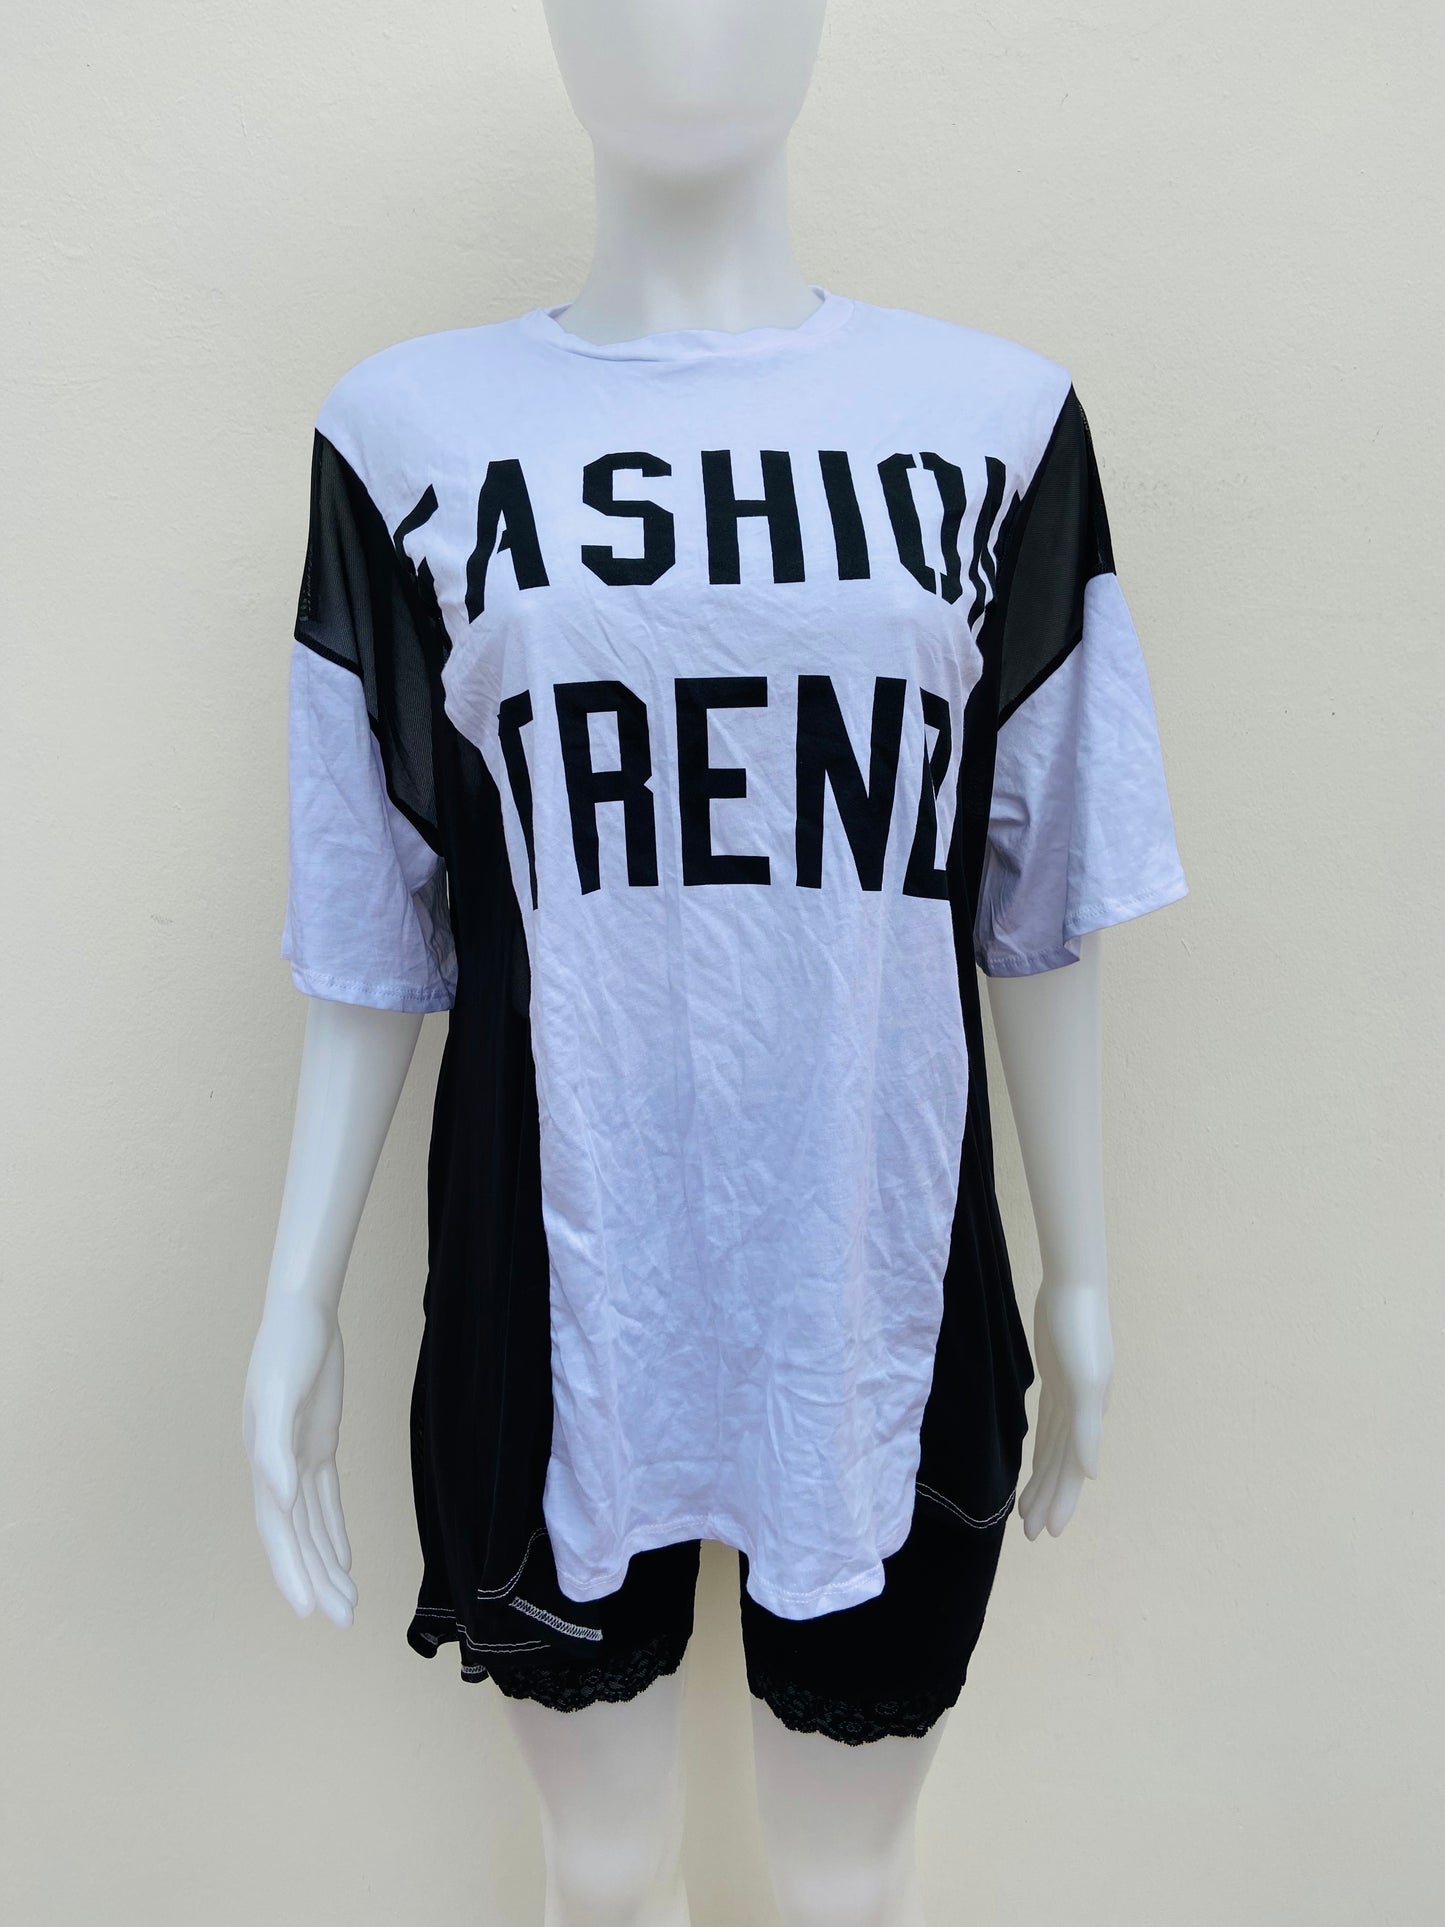 Top/ blusón Fashion Nova original blanco con negro y letras FASHION TREND ( tendencia de la moda )